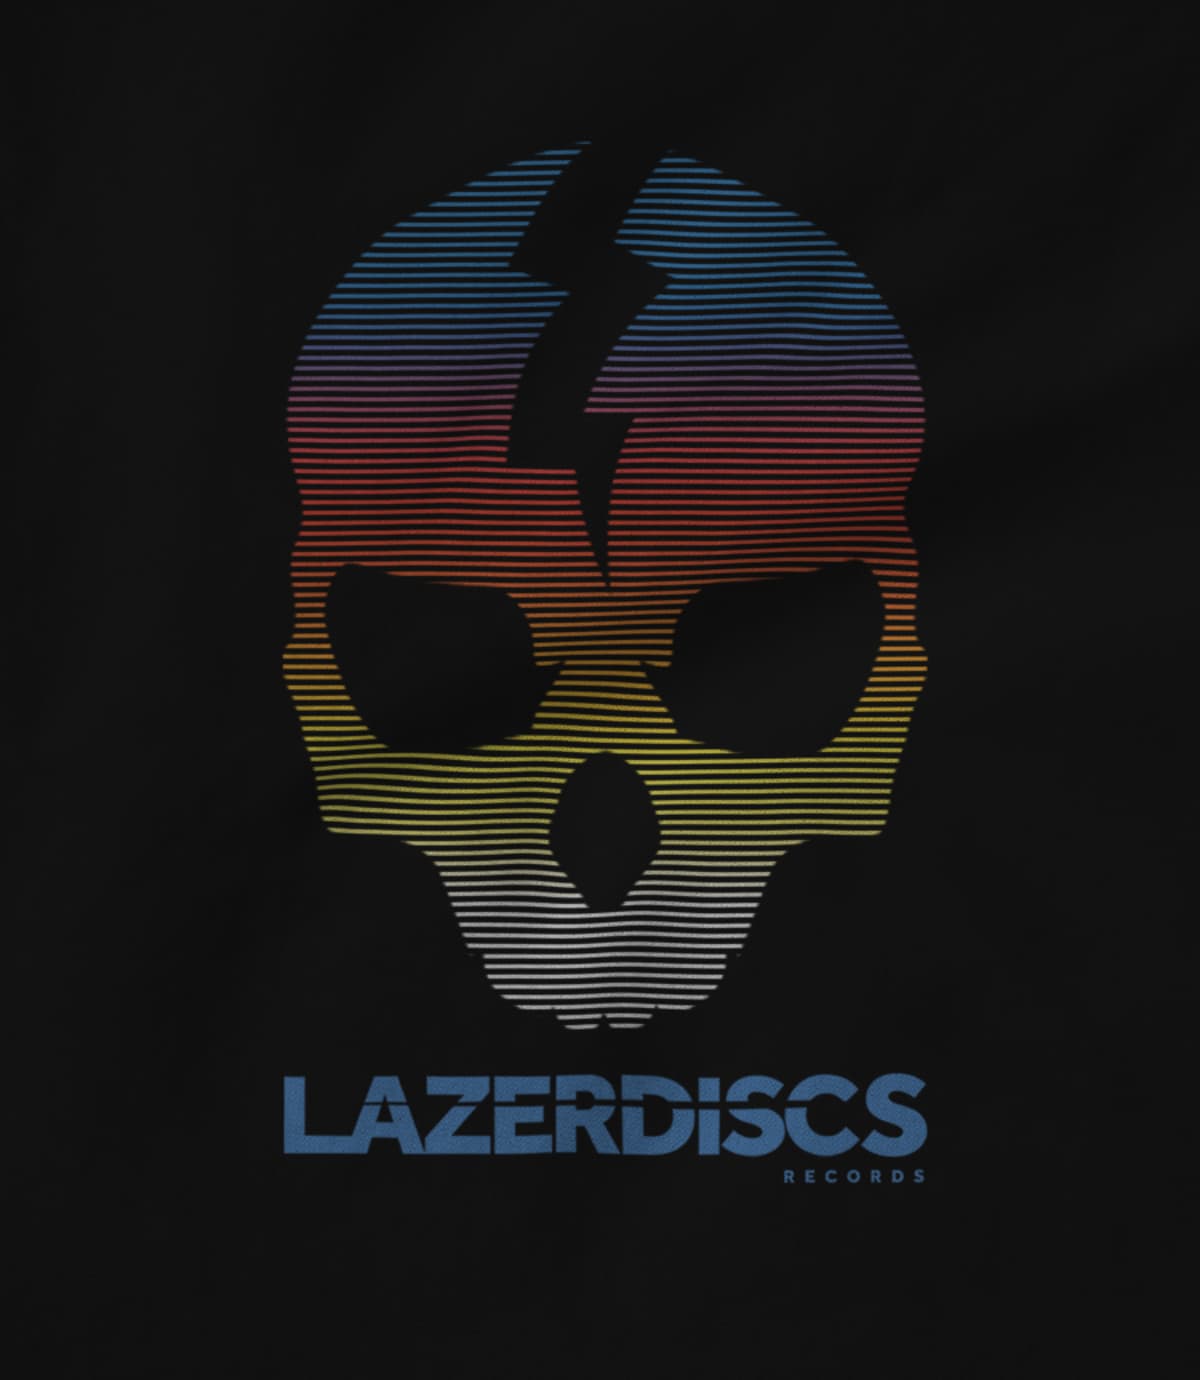 Lazerdiscs Records